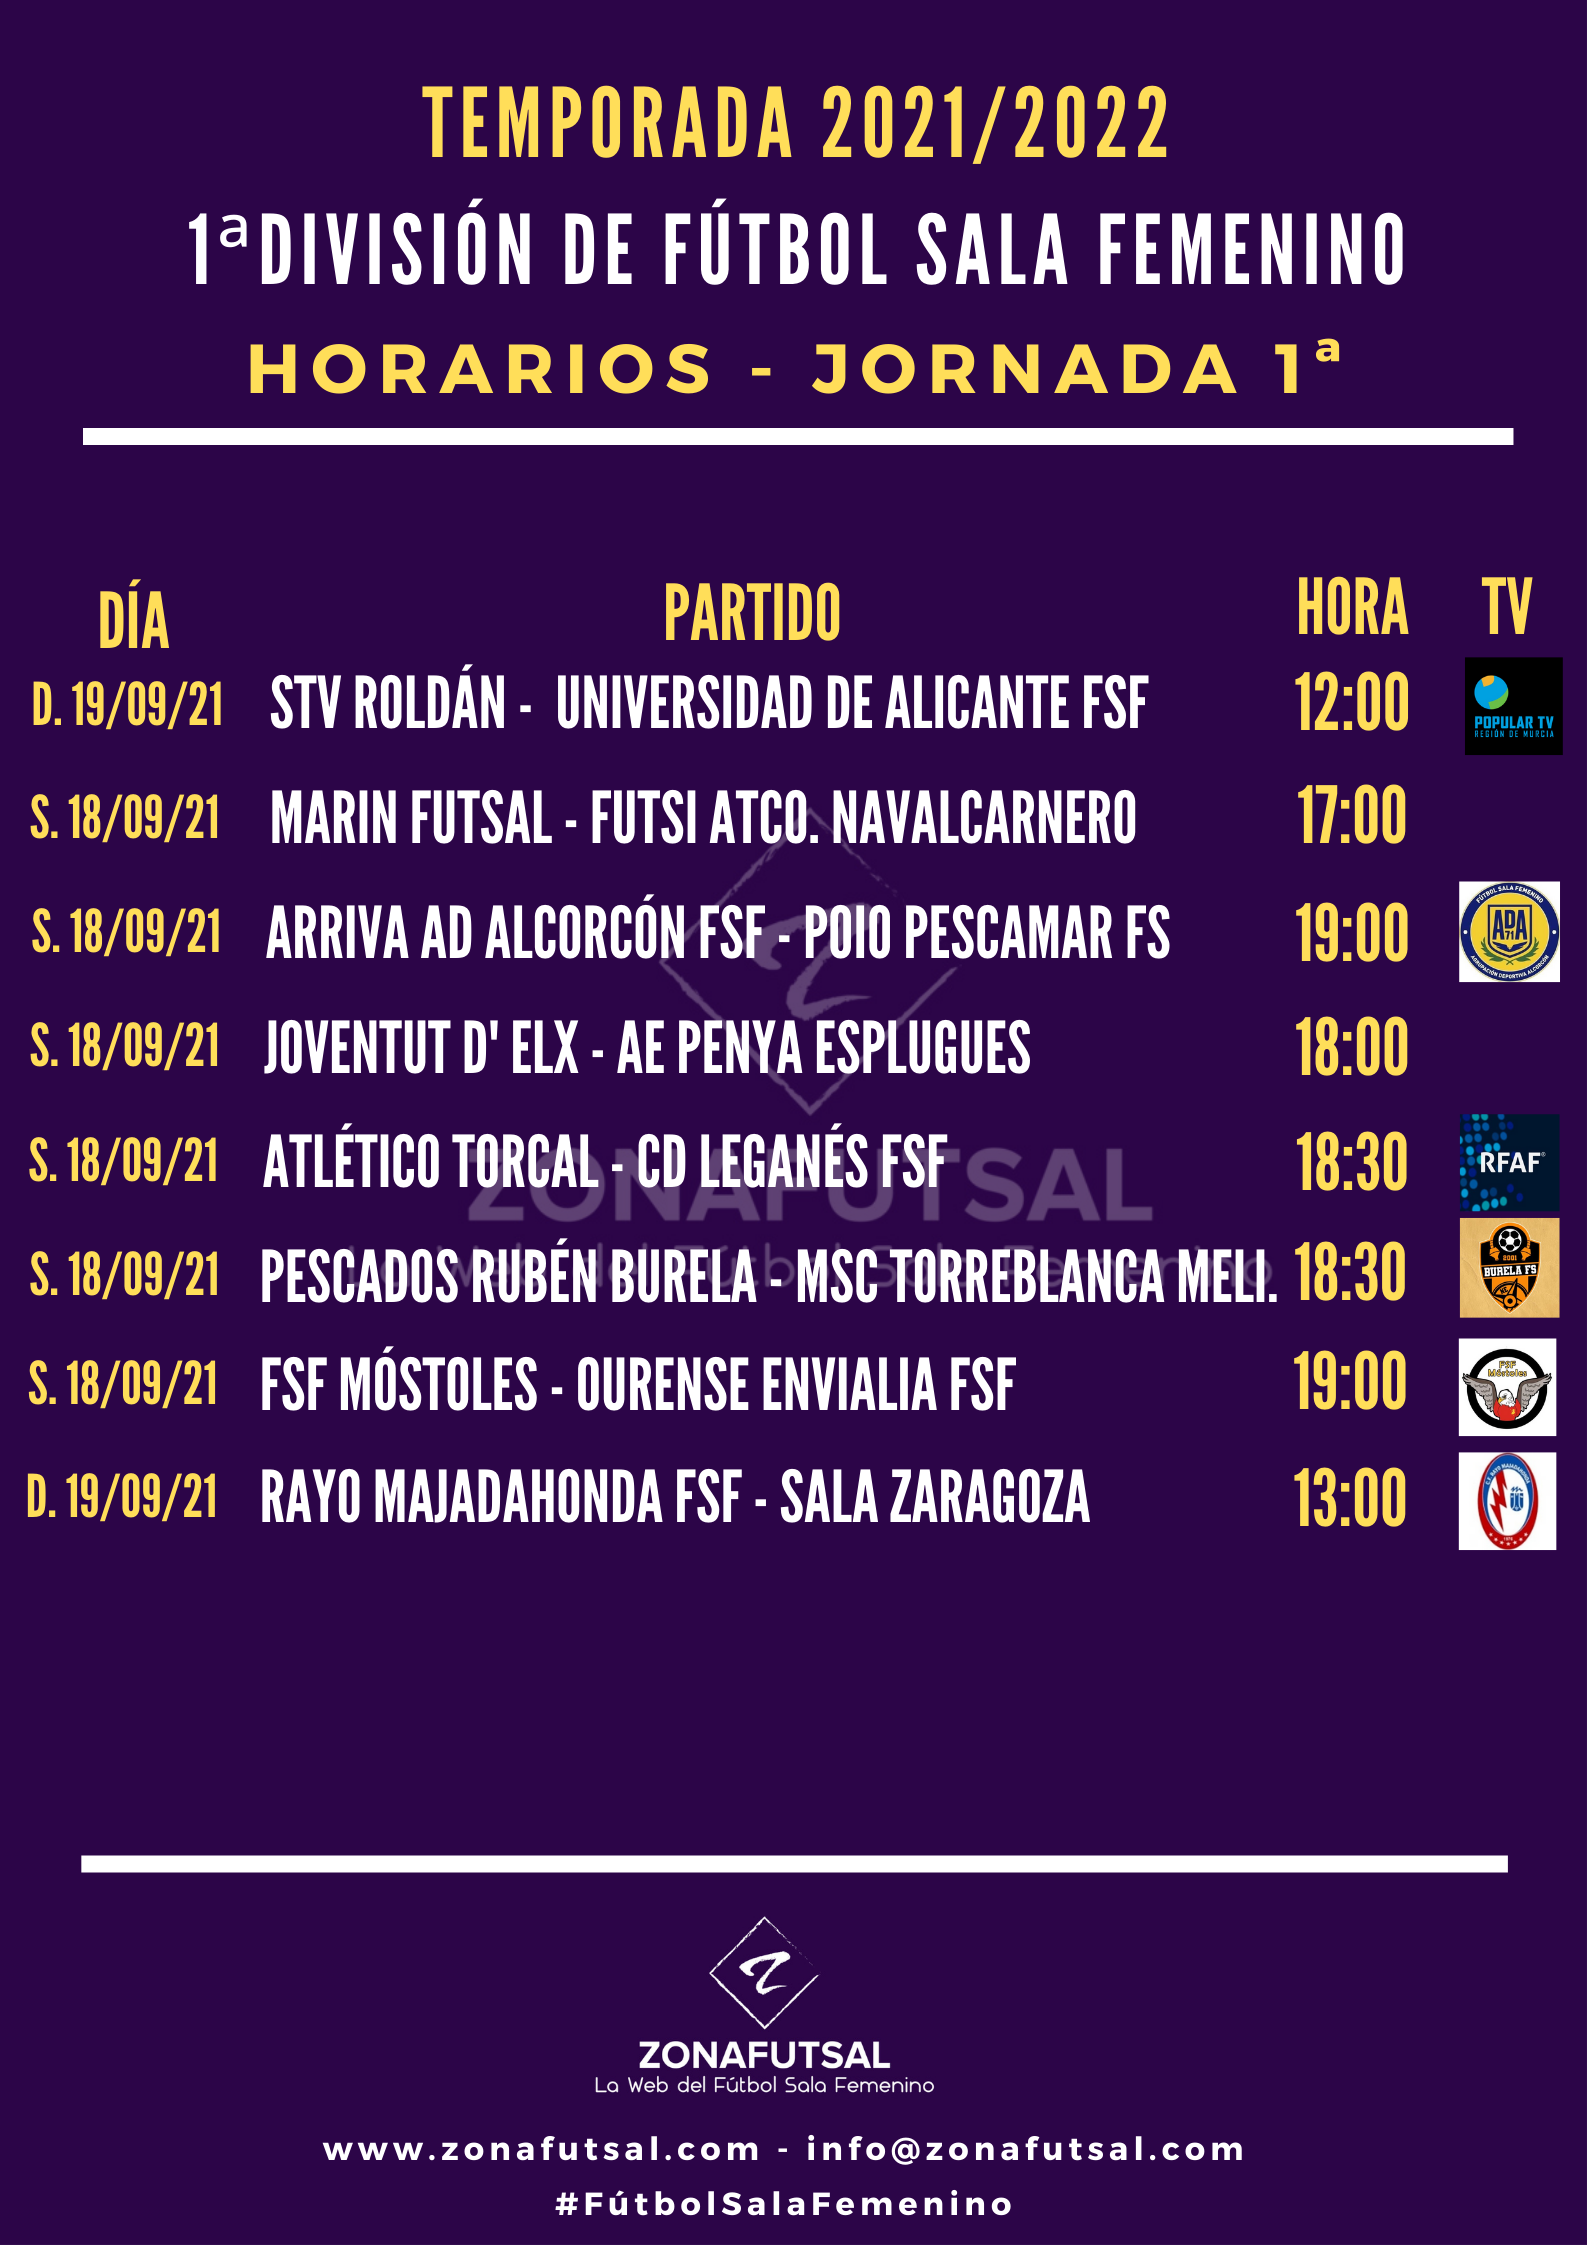 Horarios y Emisiones de la 1ª Jornada de la 1ª División de Fútbol Sala Femenino. Temporada 2021/2022